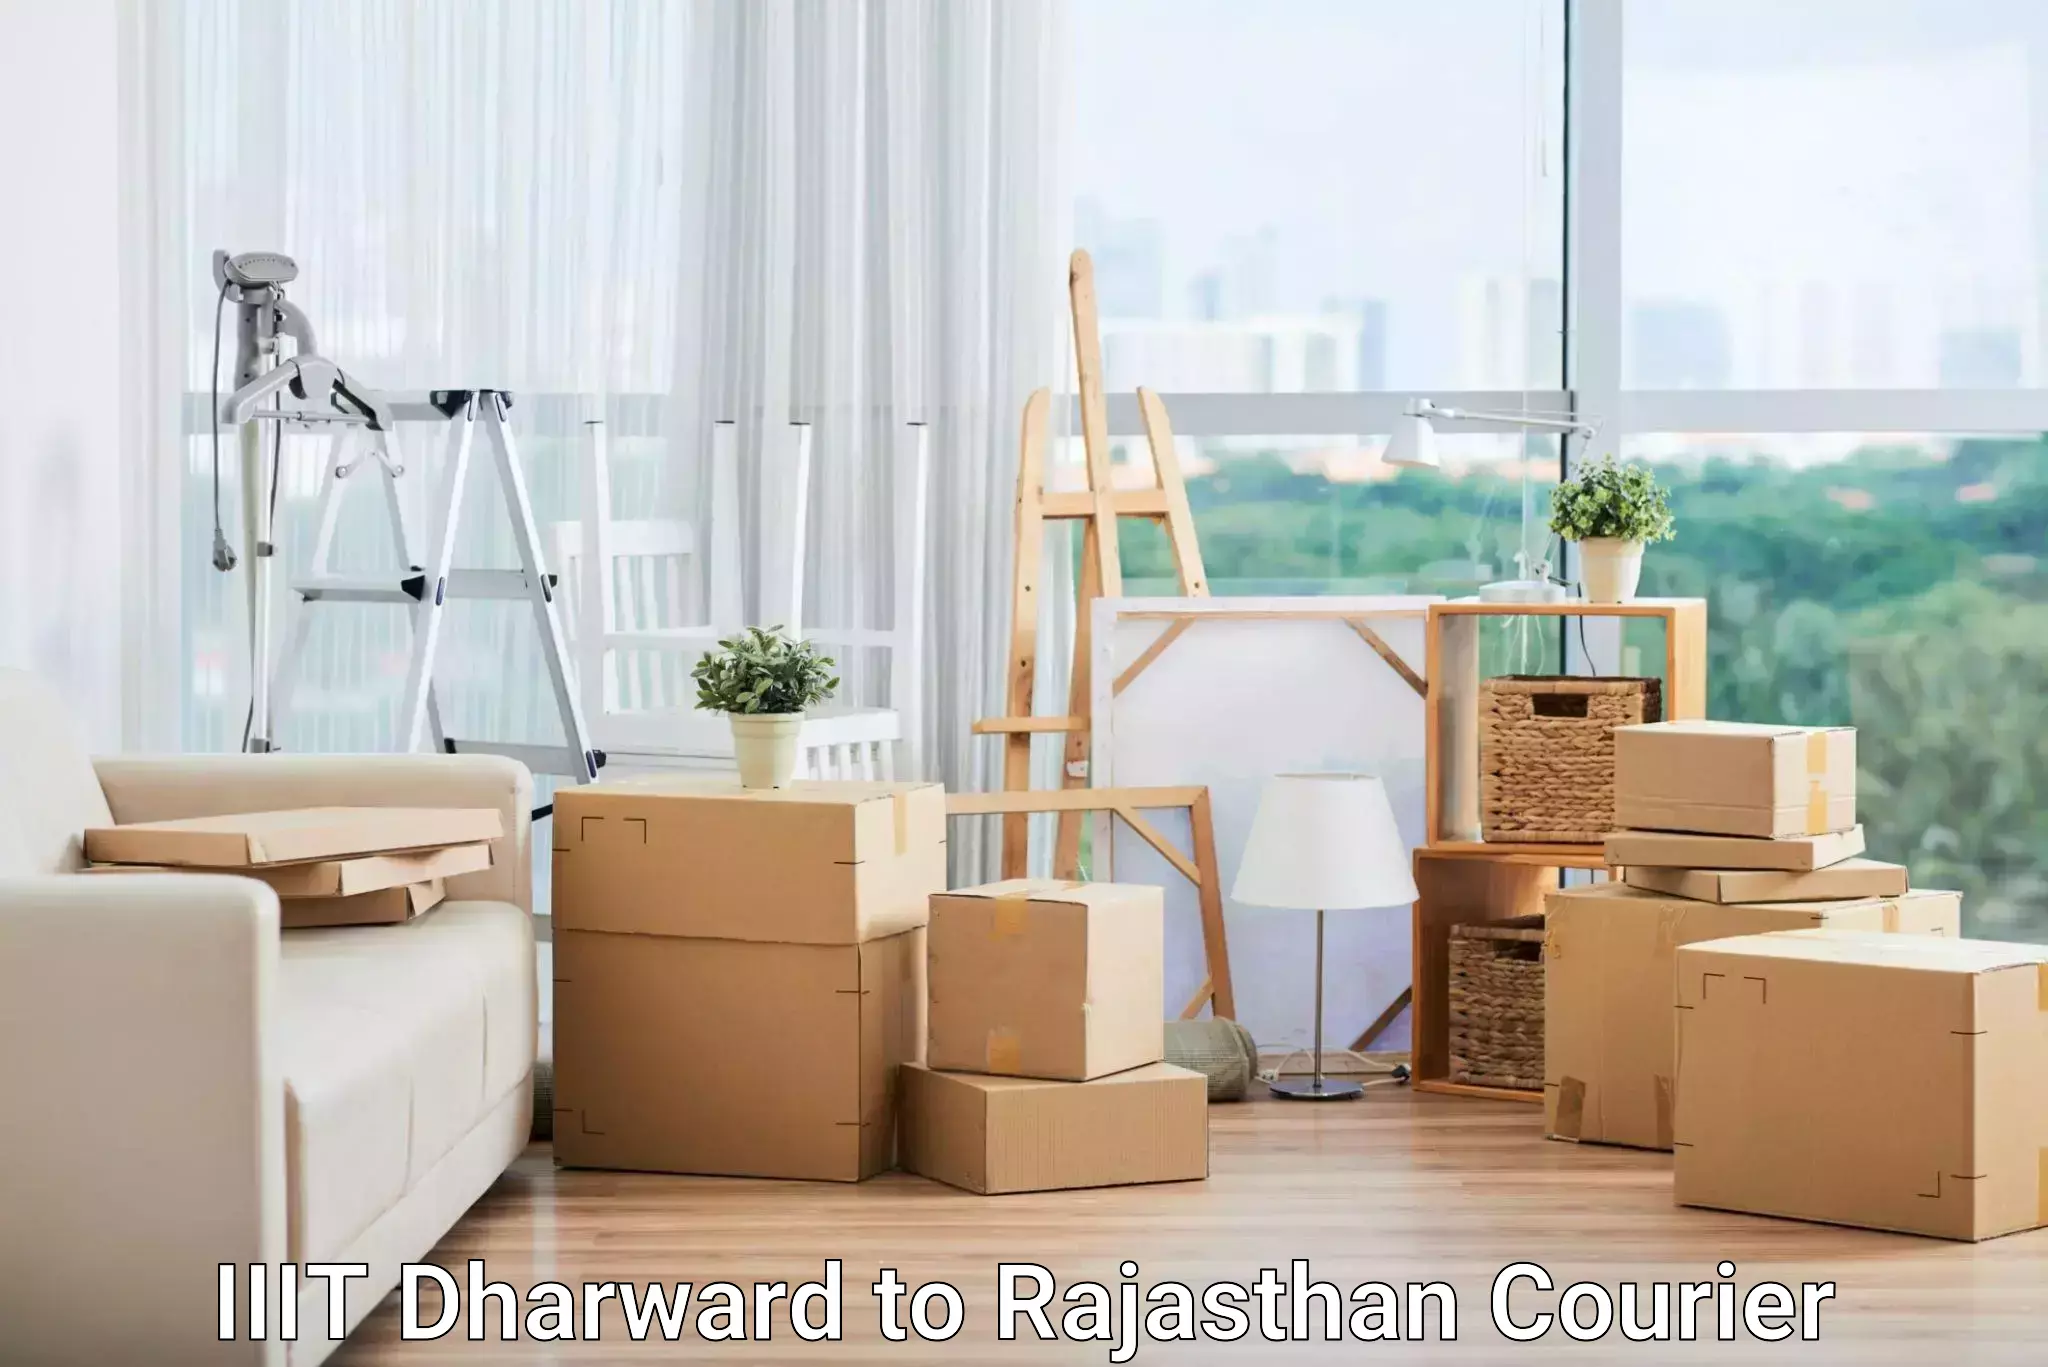 Bulk courier orders IIIT Dharward to Rajasthan